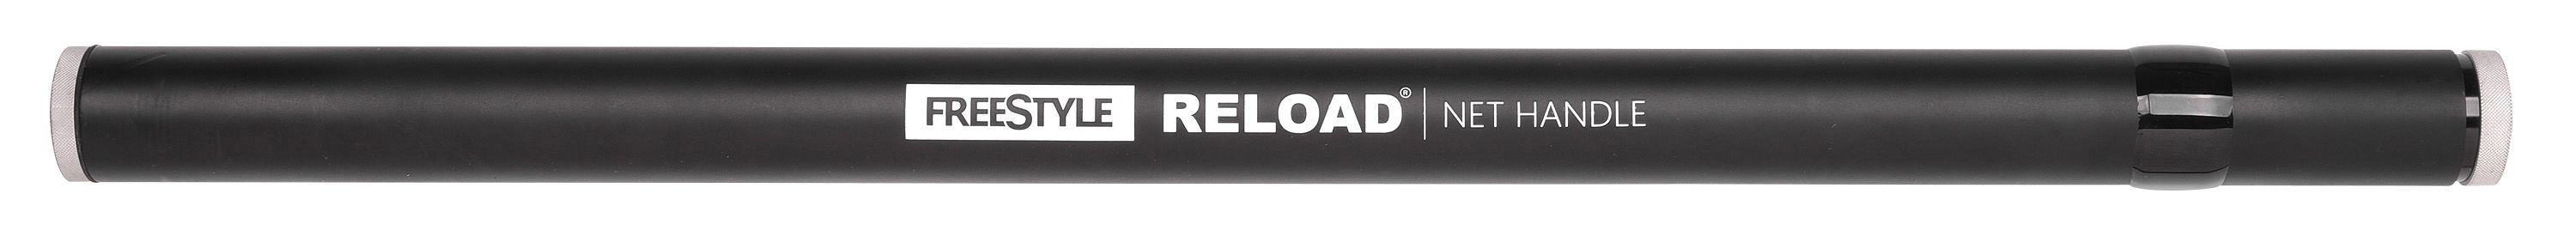 Manche d'épuisette télescopique Spro Freestyle Reload Net Handle - 4,00m